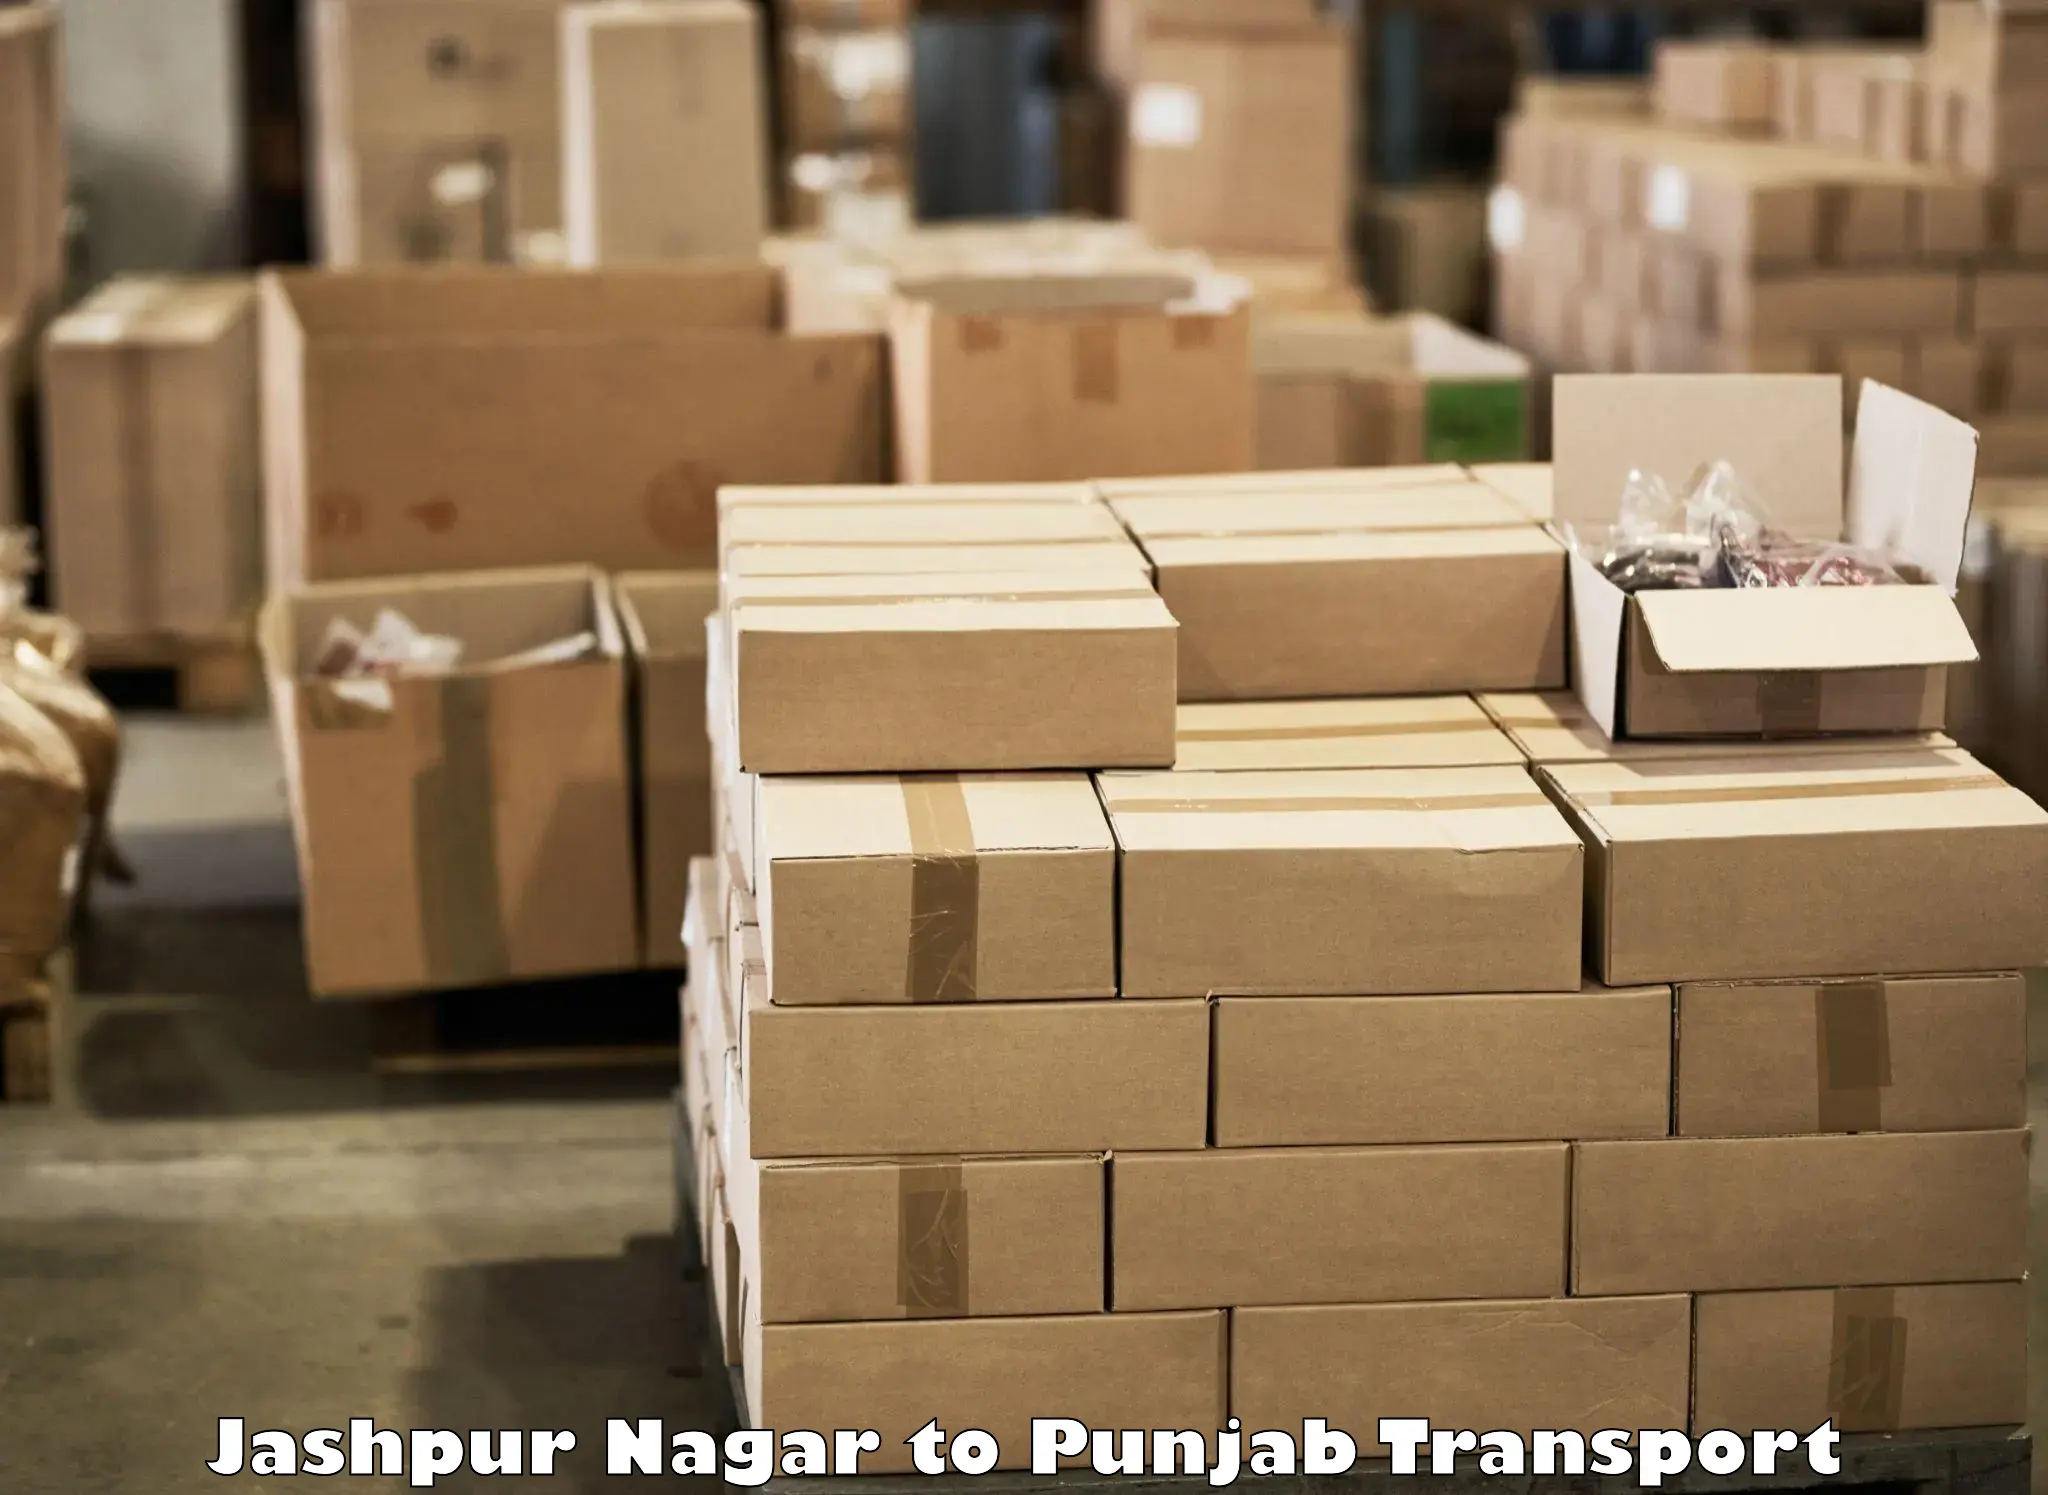 Nationwide transport services Jashpur Nagar to Anandpur Sahib